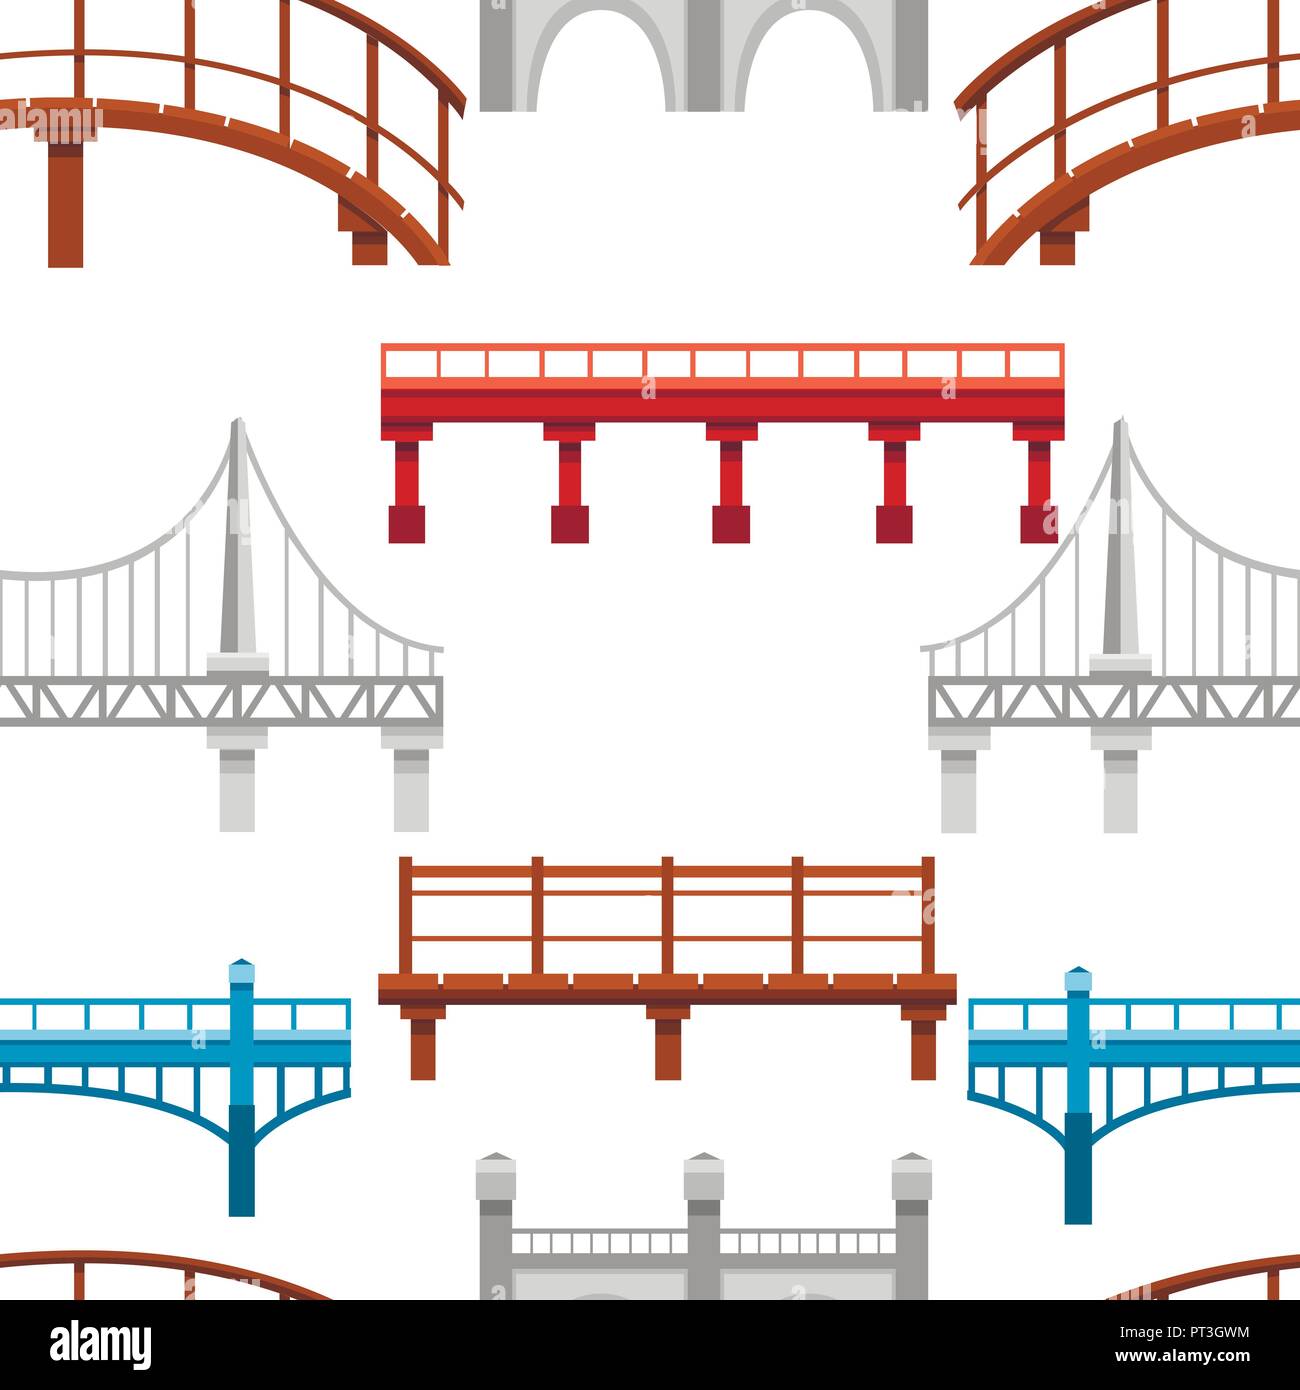 Modello senza giunture. Raccolta di diversi ponti. Città Architettura icona piatta. Illustrazione Vettoriale su sfondo bianco. Illustrazione Vettoriale